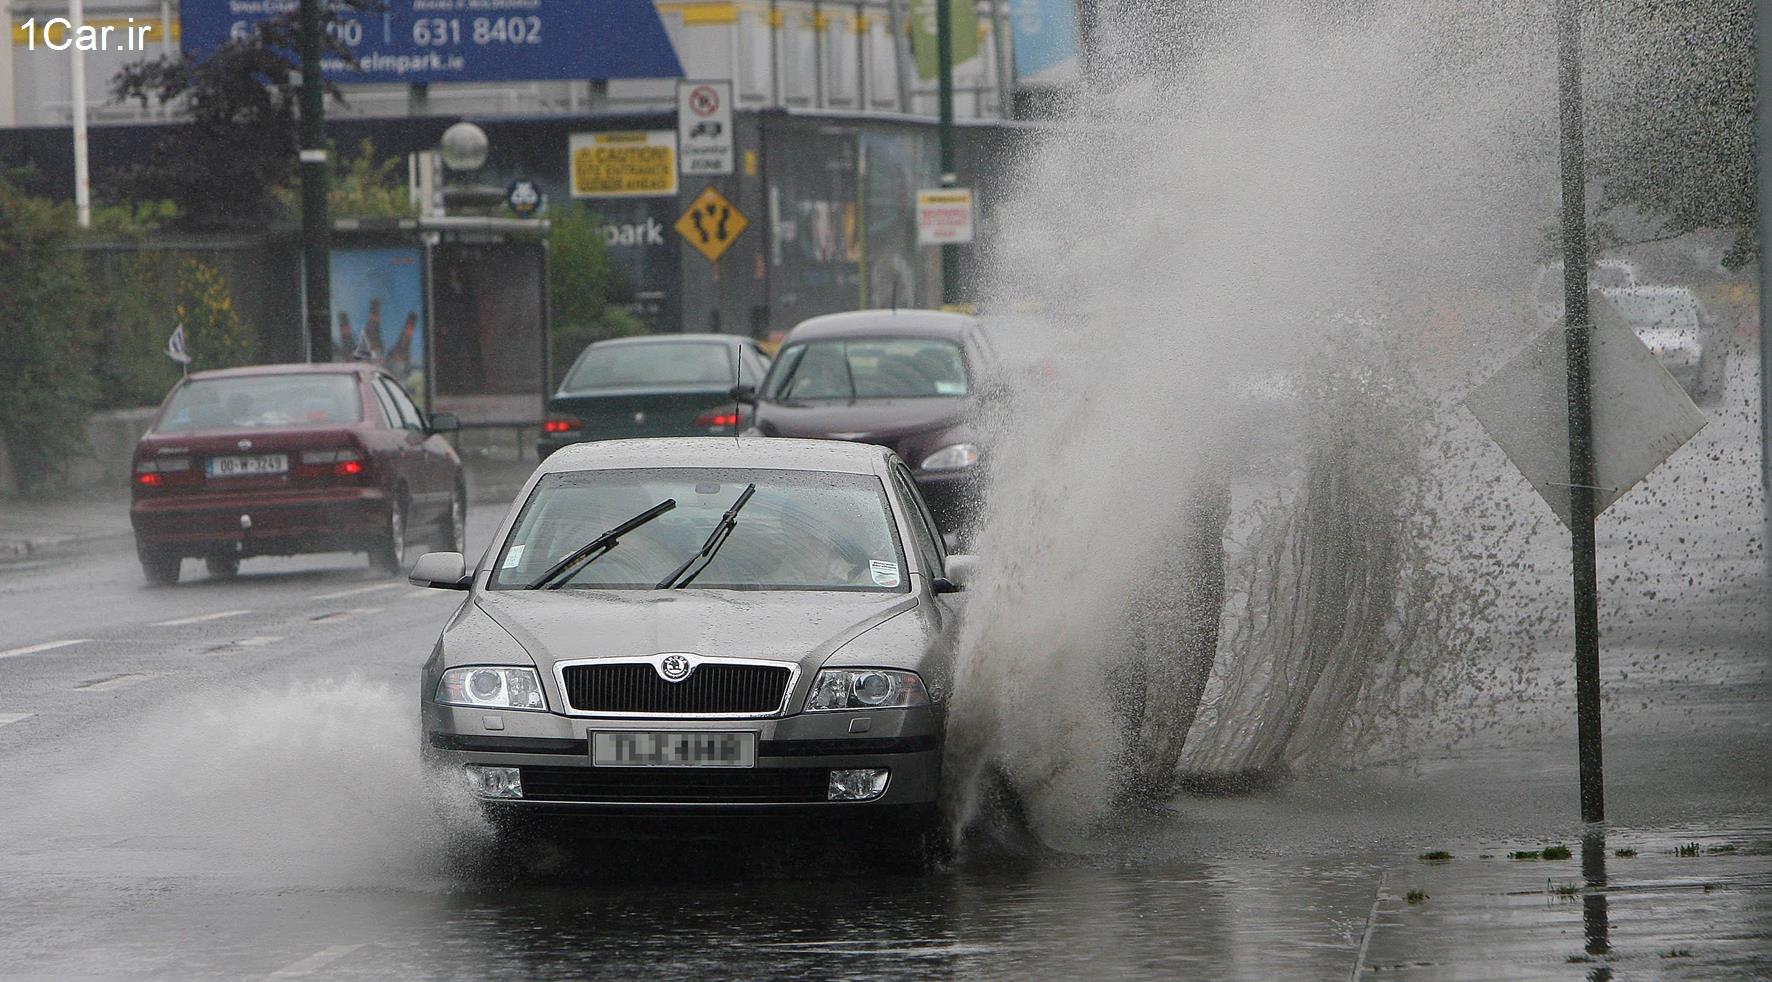 نکات مهم در خصوص رانندگی در هوای بارانی